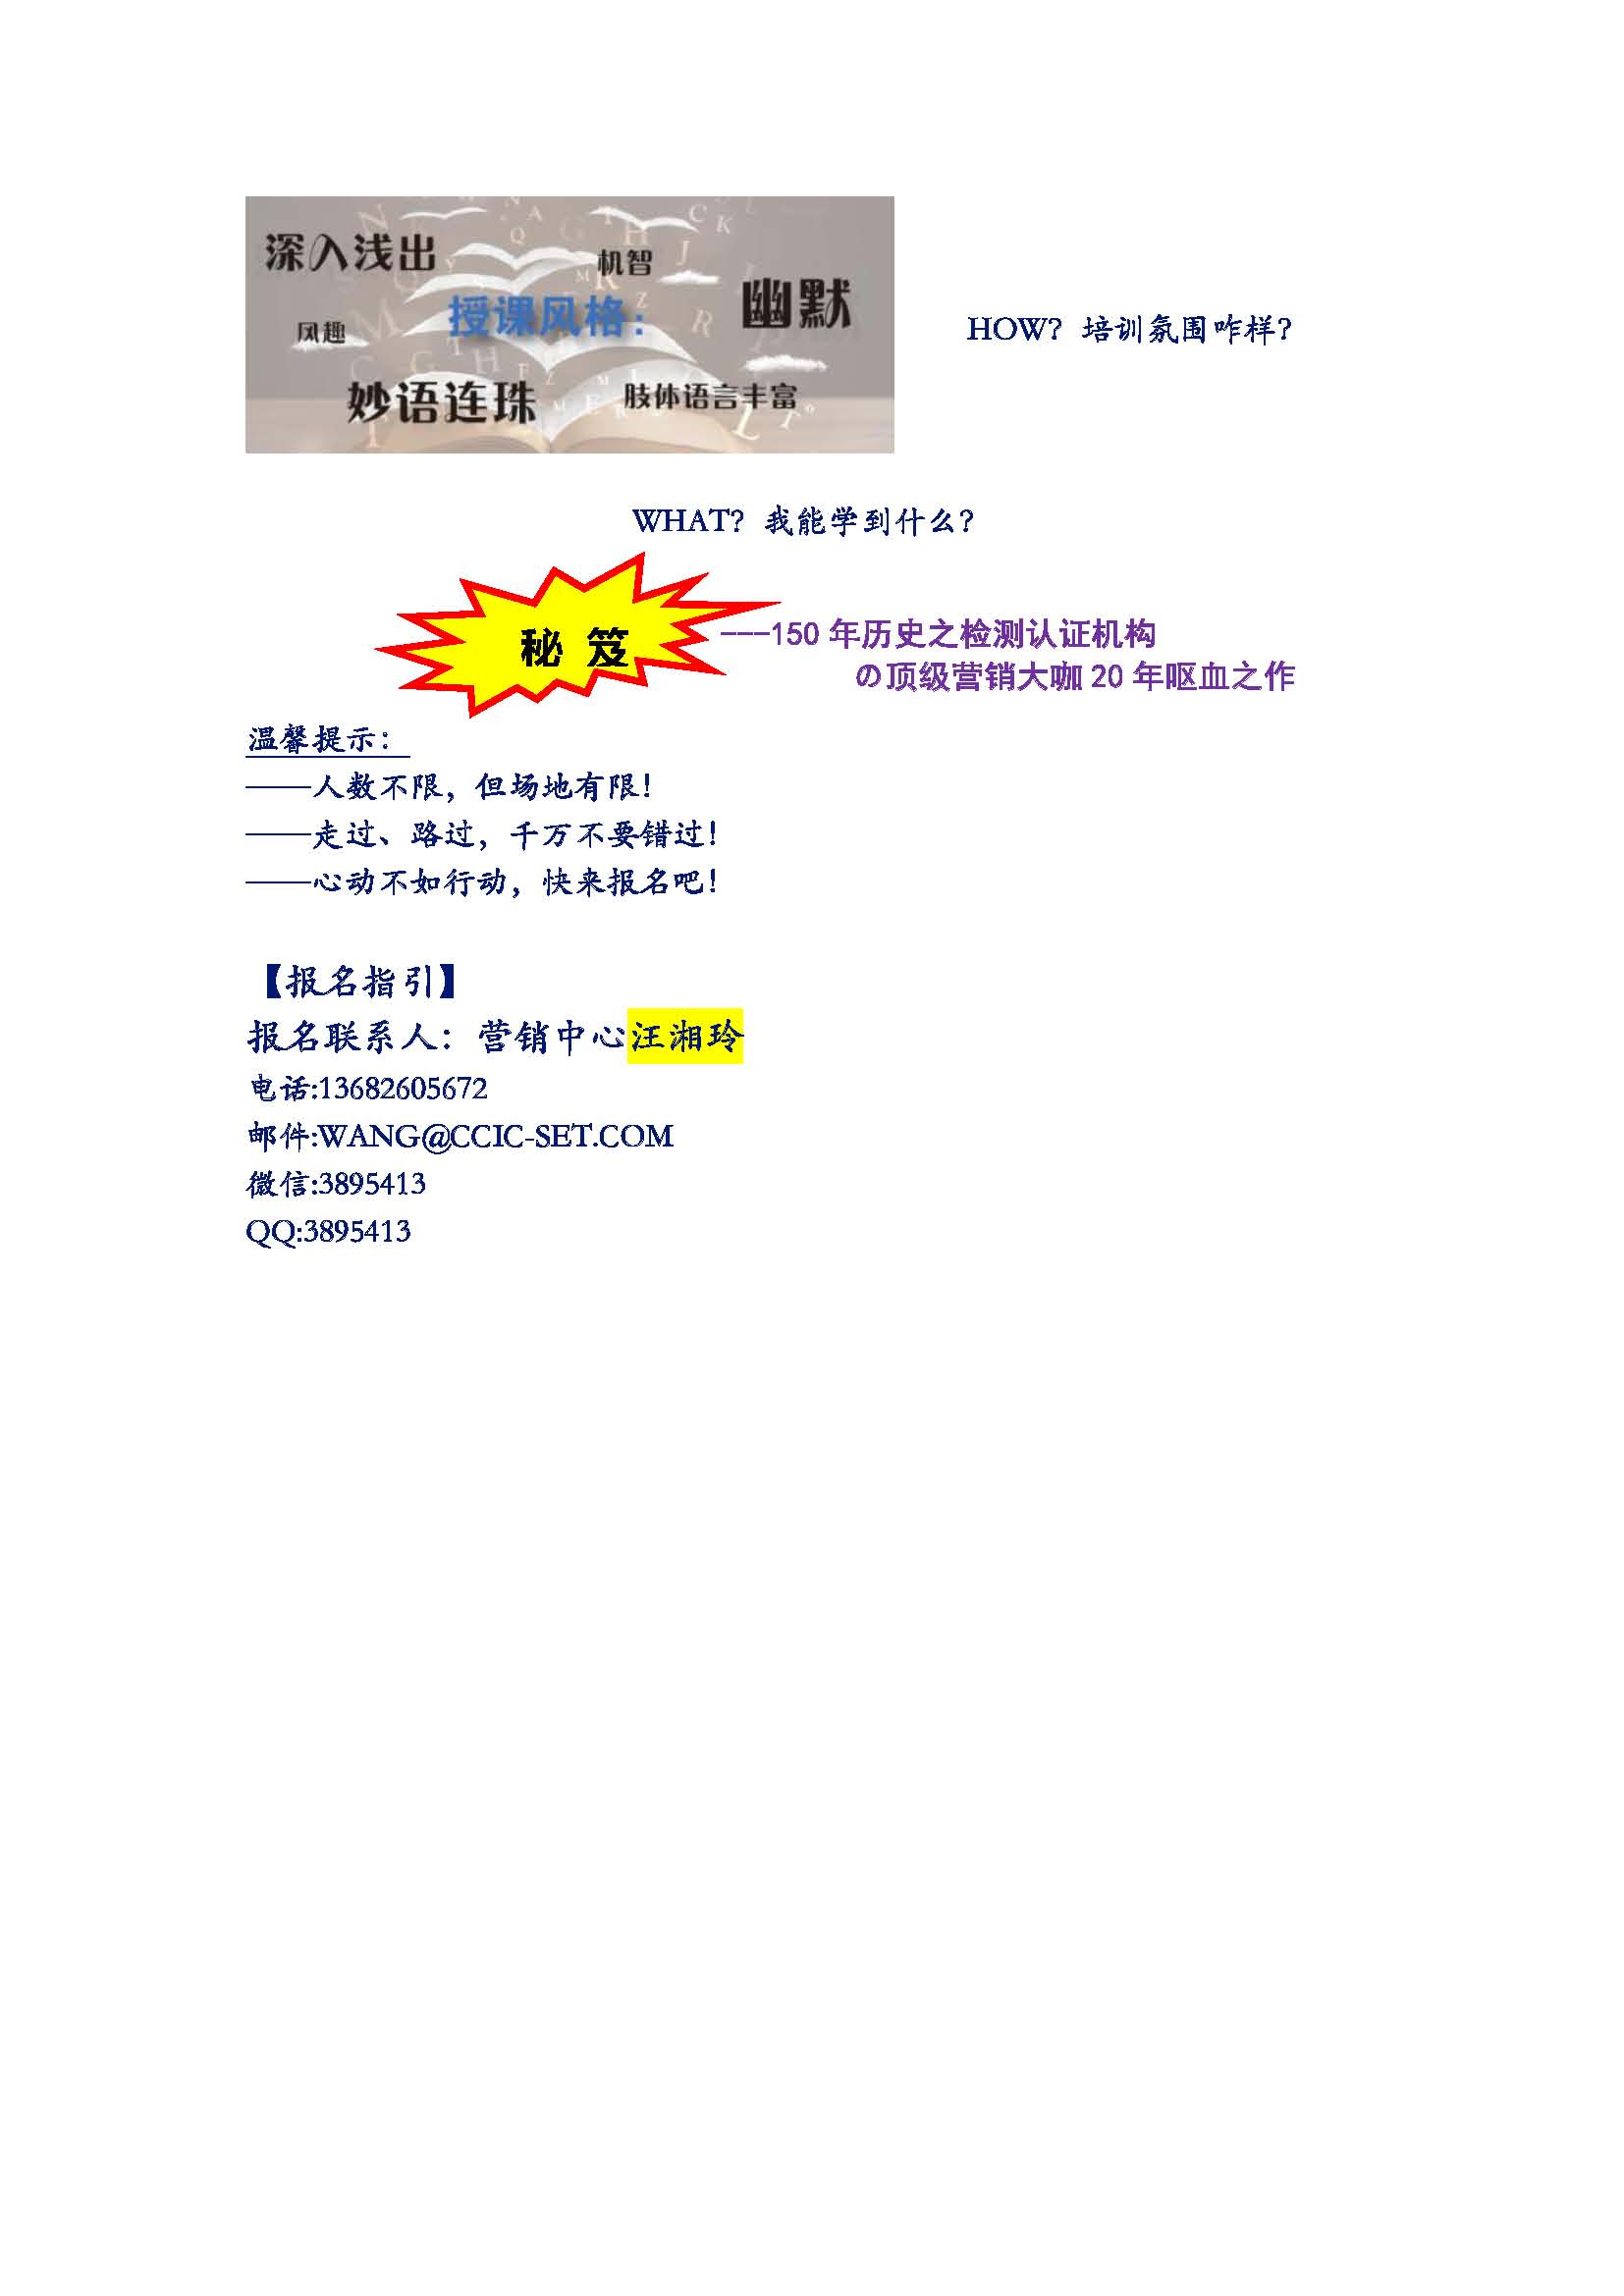 中检南方学院第一课---吕岳宪认证服务营销讲座火热报名中(图2)